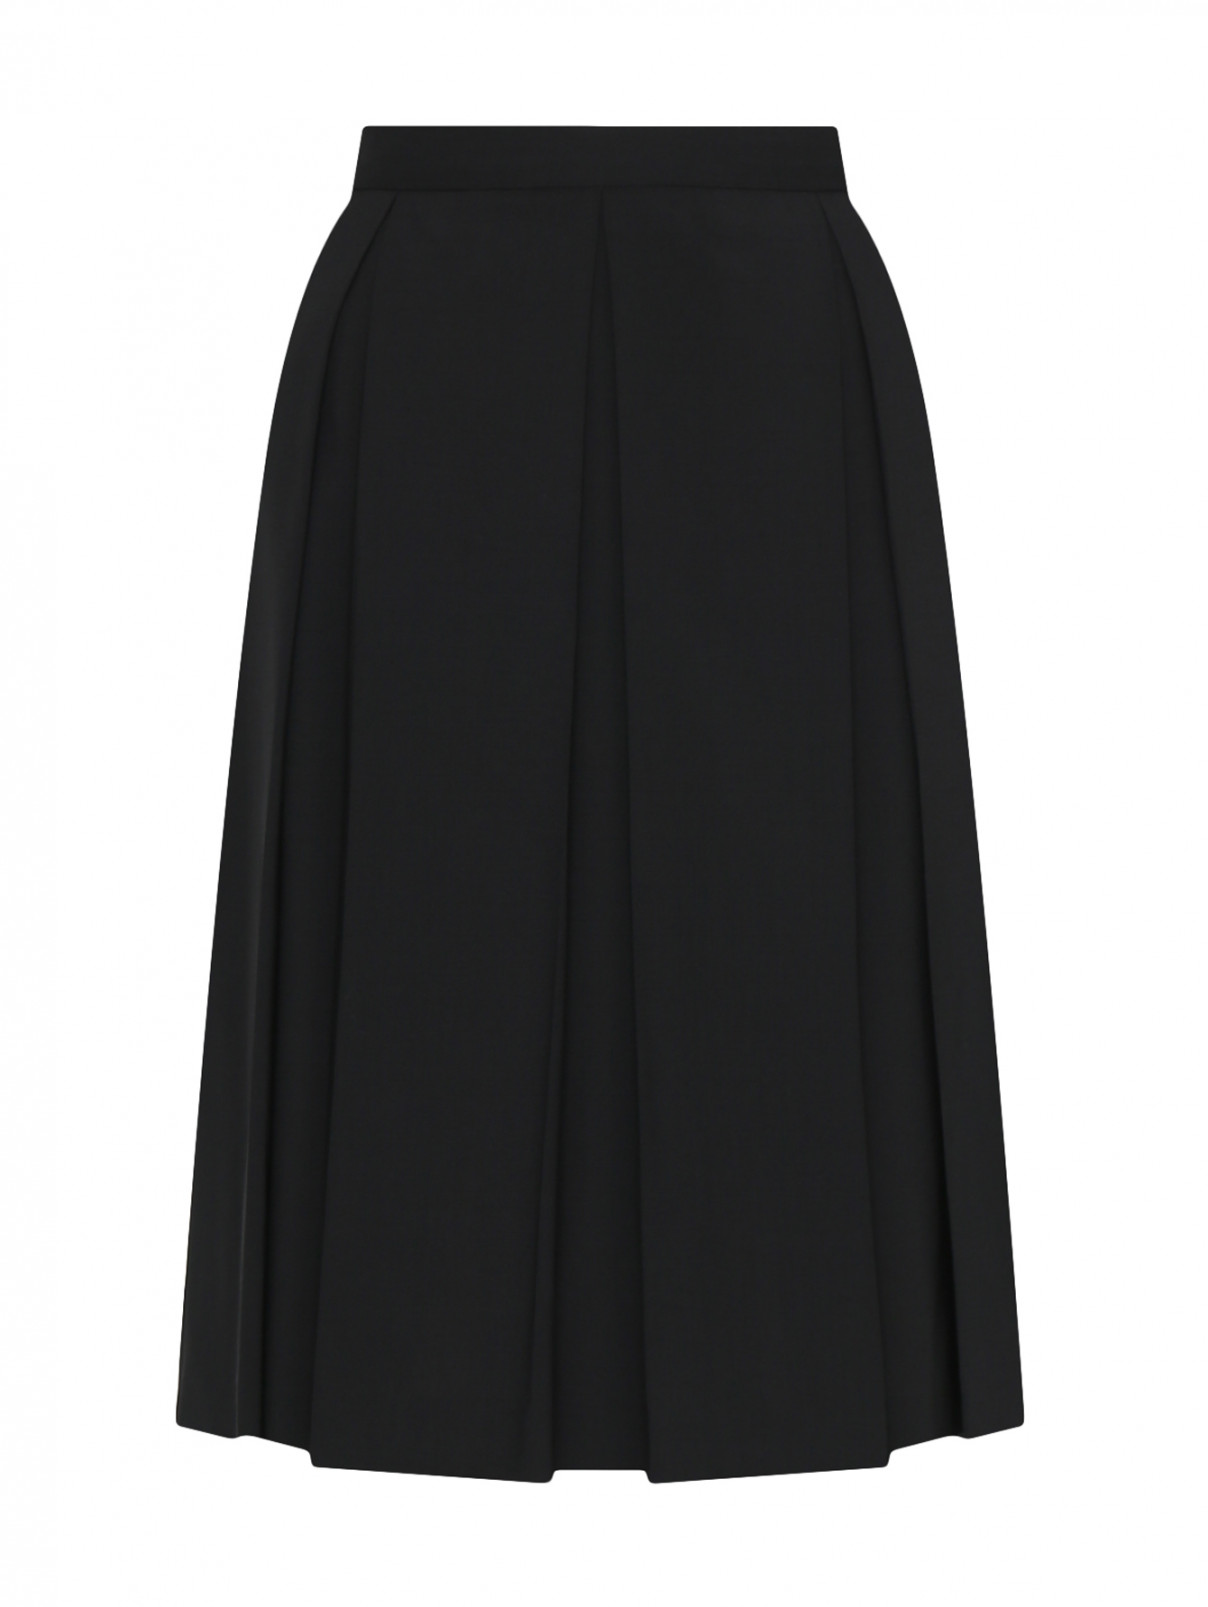 Плиссированная юбка-миди Red Valentino  –  Общий вид  – Цвет:  Черный